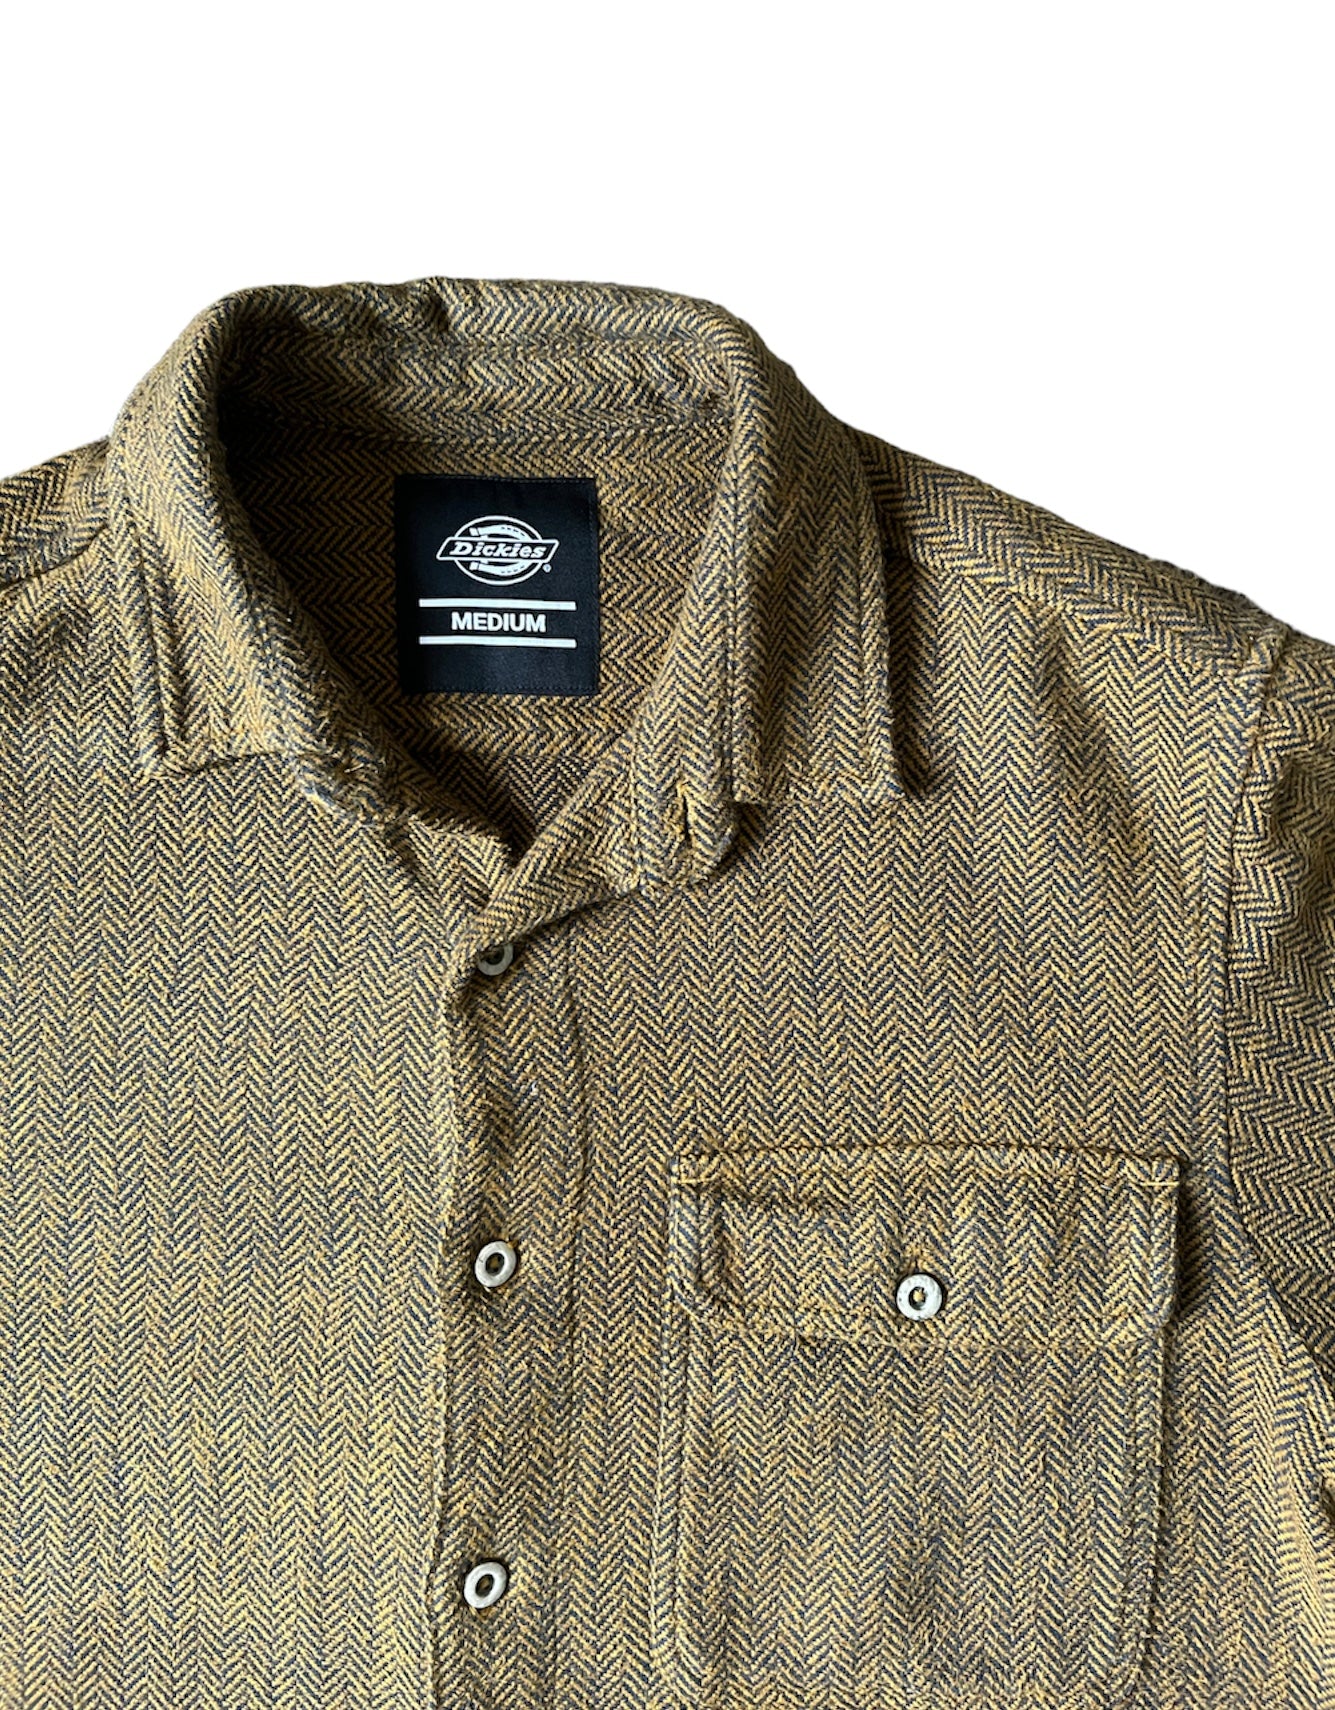 Dickies Textured Shirt Brown - Medium